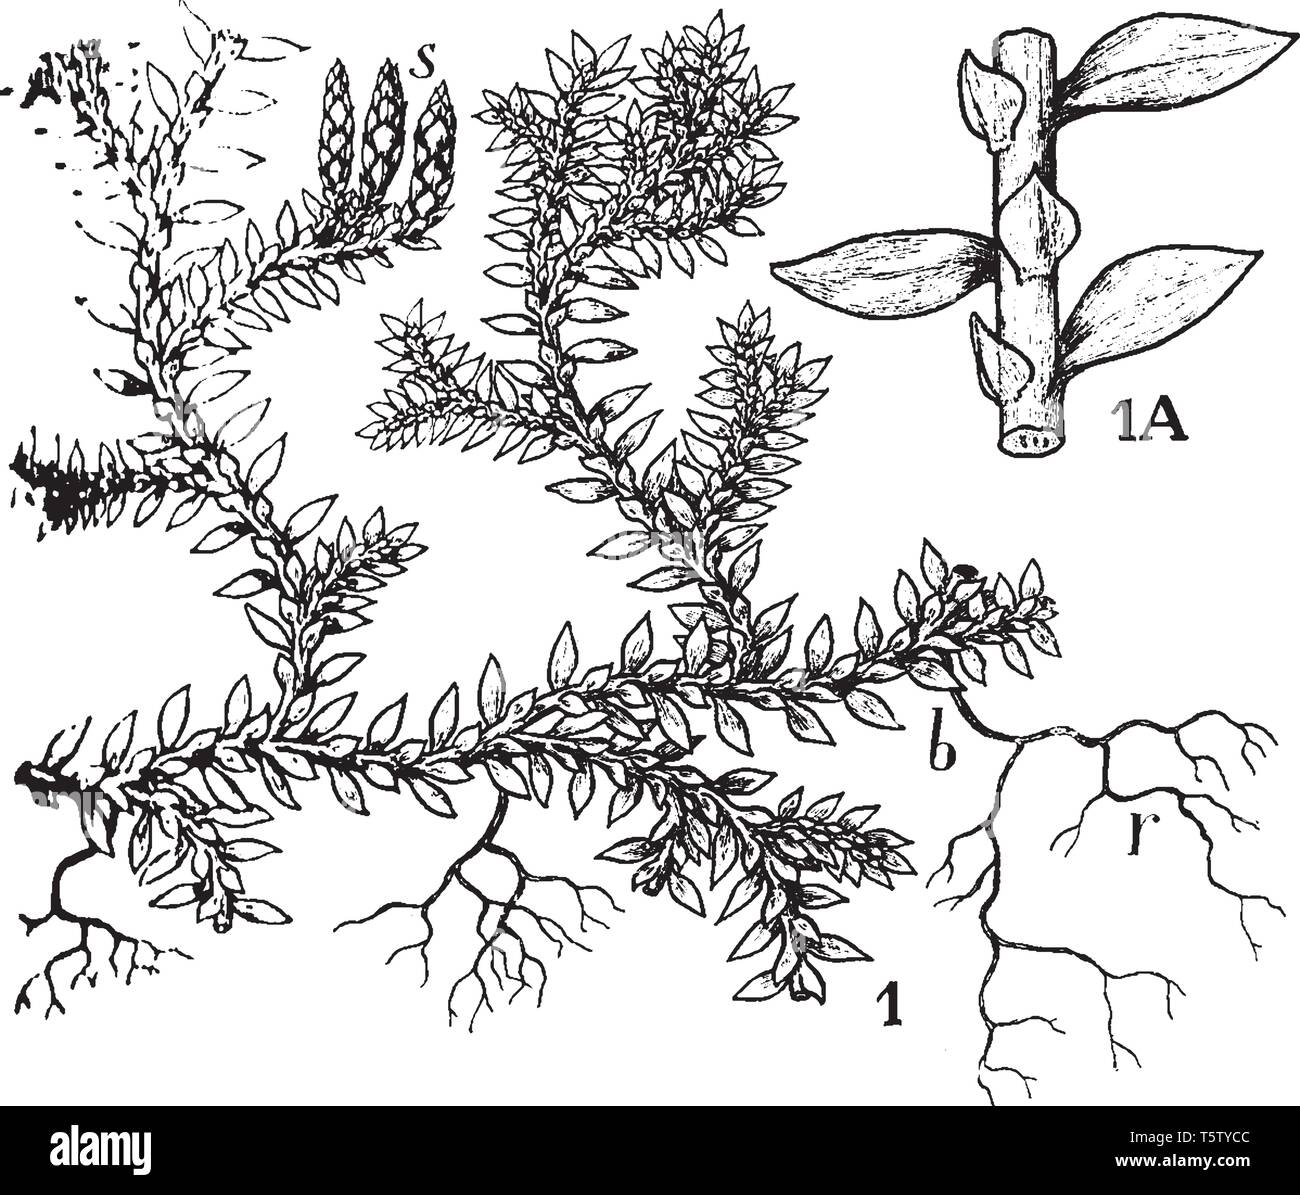 Das Bild zeigt eine gemeinsame kultiviert Selaginella: I, wuchsform-s, strobili; b, ein Zweig mit Wurzeln, r. 1 Ein Teil der Stammzellen, Anzeigen lea Stock Vektor